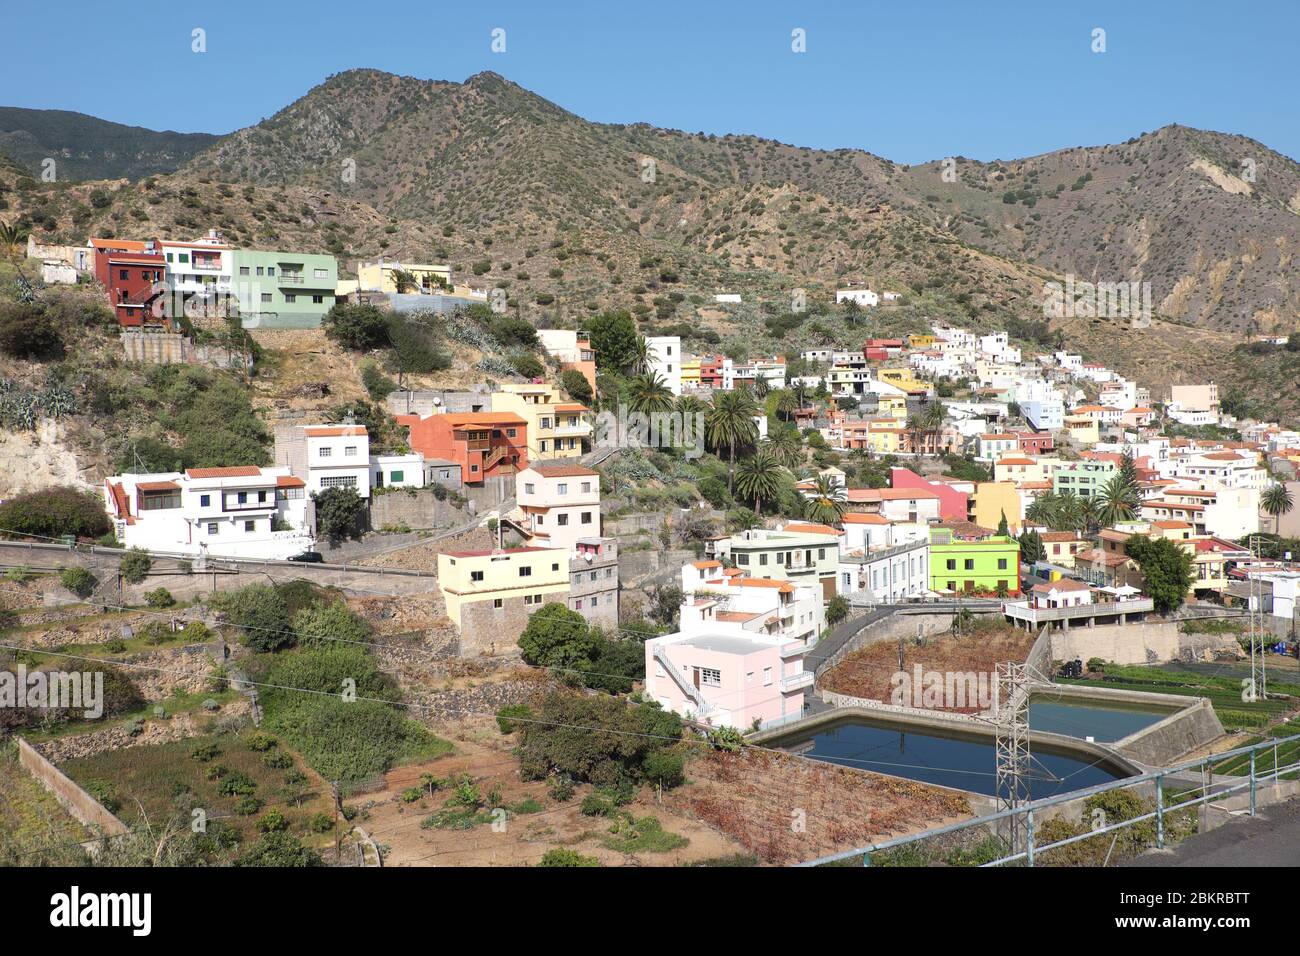 Des bâtiments colorés embrassent la colline dans la petite ville de Vallehermoso sur la Gomera, îles Canaries Banque D'Images